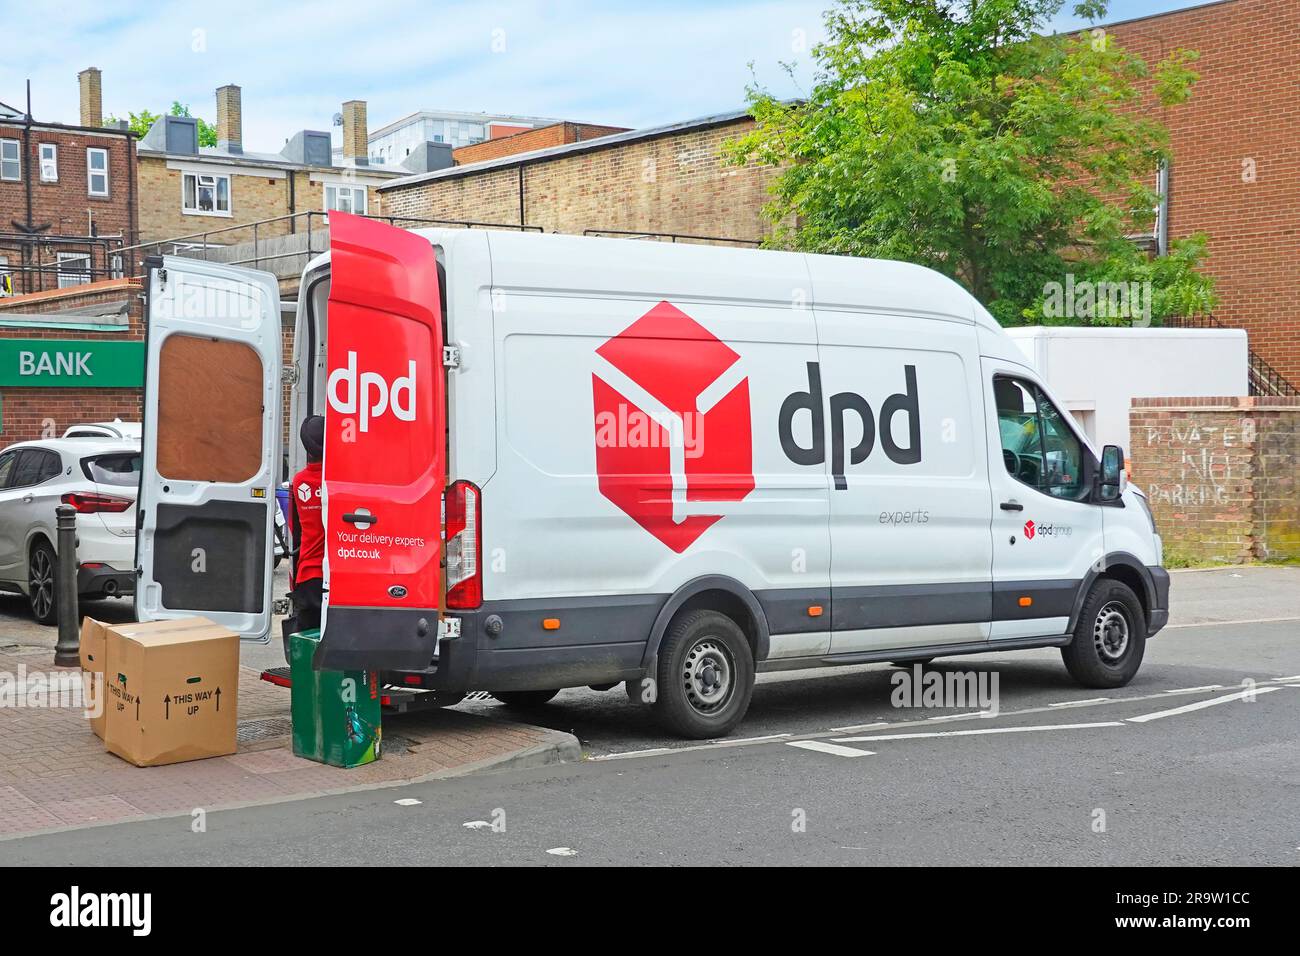 Vue latérale arrière portes ouvertes arrière du camion de livraison de colis rouge blanc DPD chauffeur triant les colis dans les grandes rues via les entrées arrière Angleterre Royaume-Uni Banque D'Images